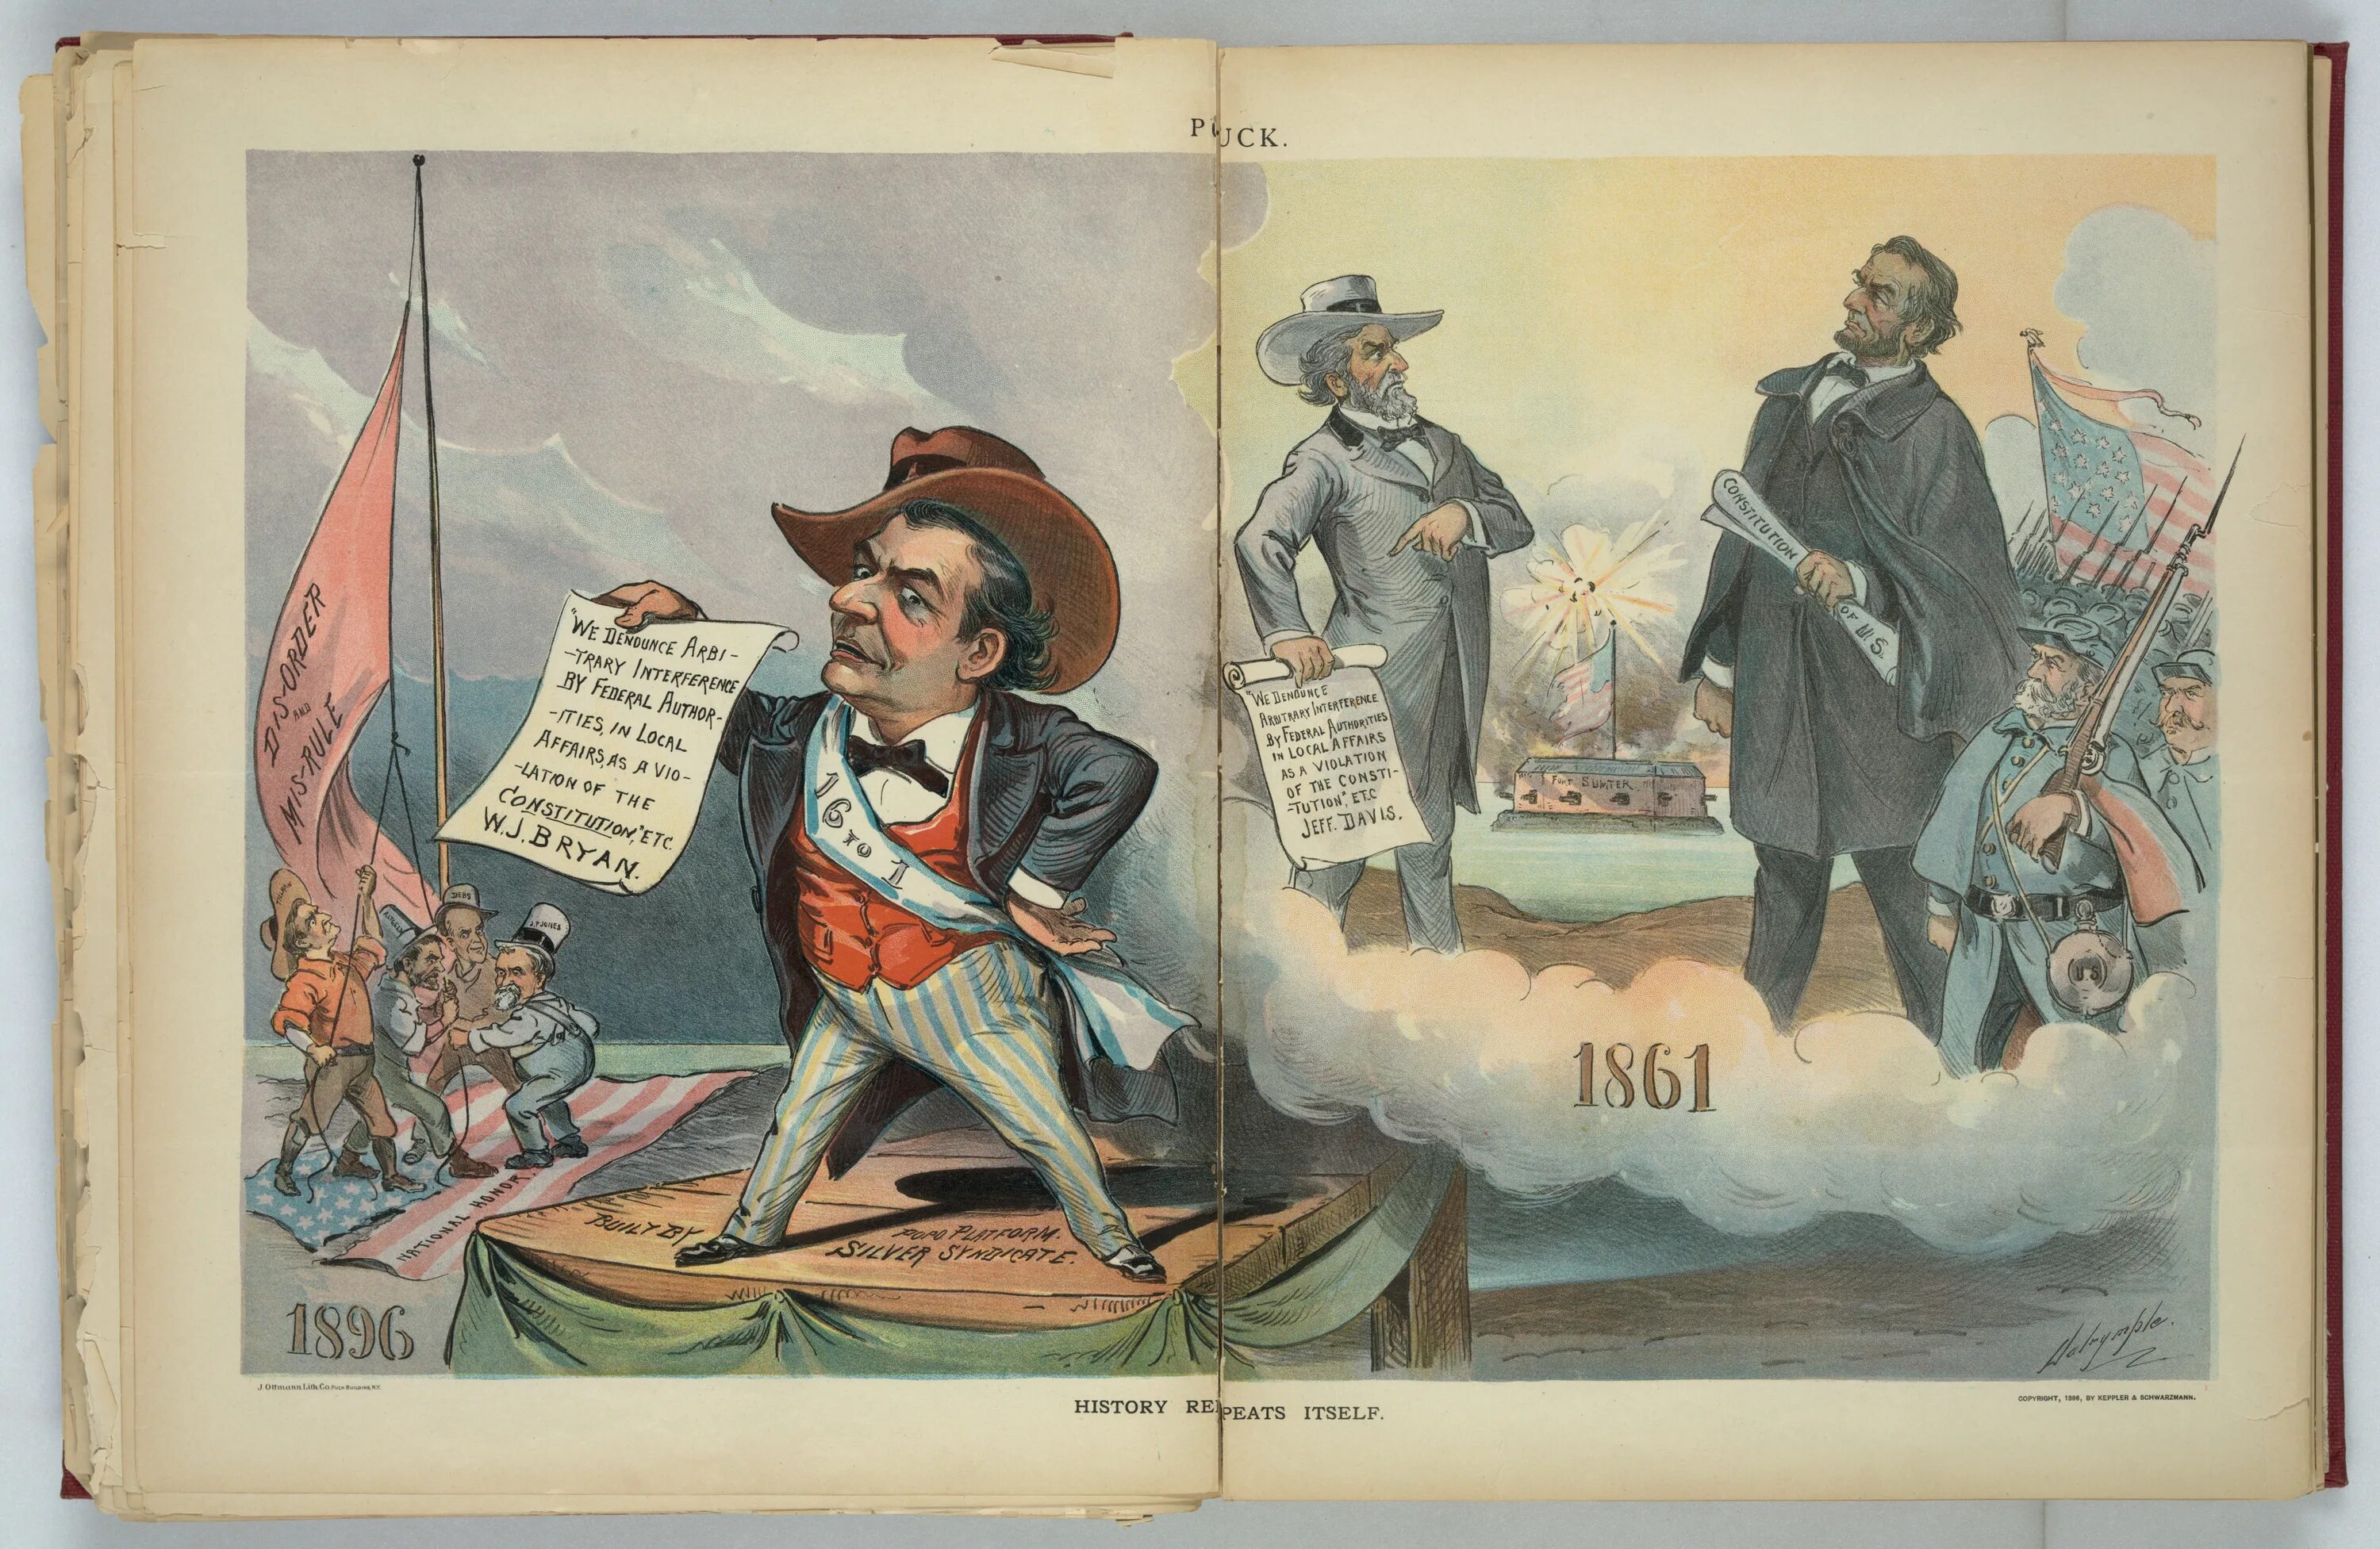 History repeats itself. Иллюстрации Хейзела Линкольна. Луи Далримпл опасная петарда карикатура.